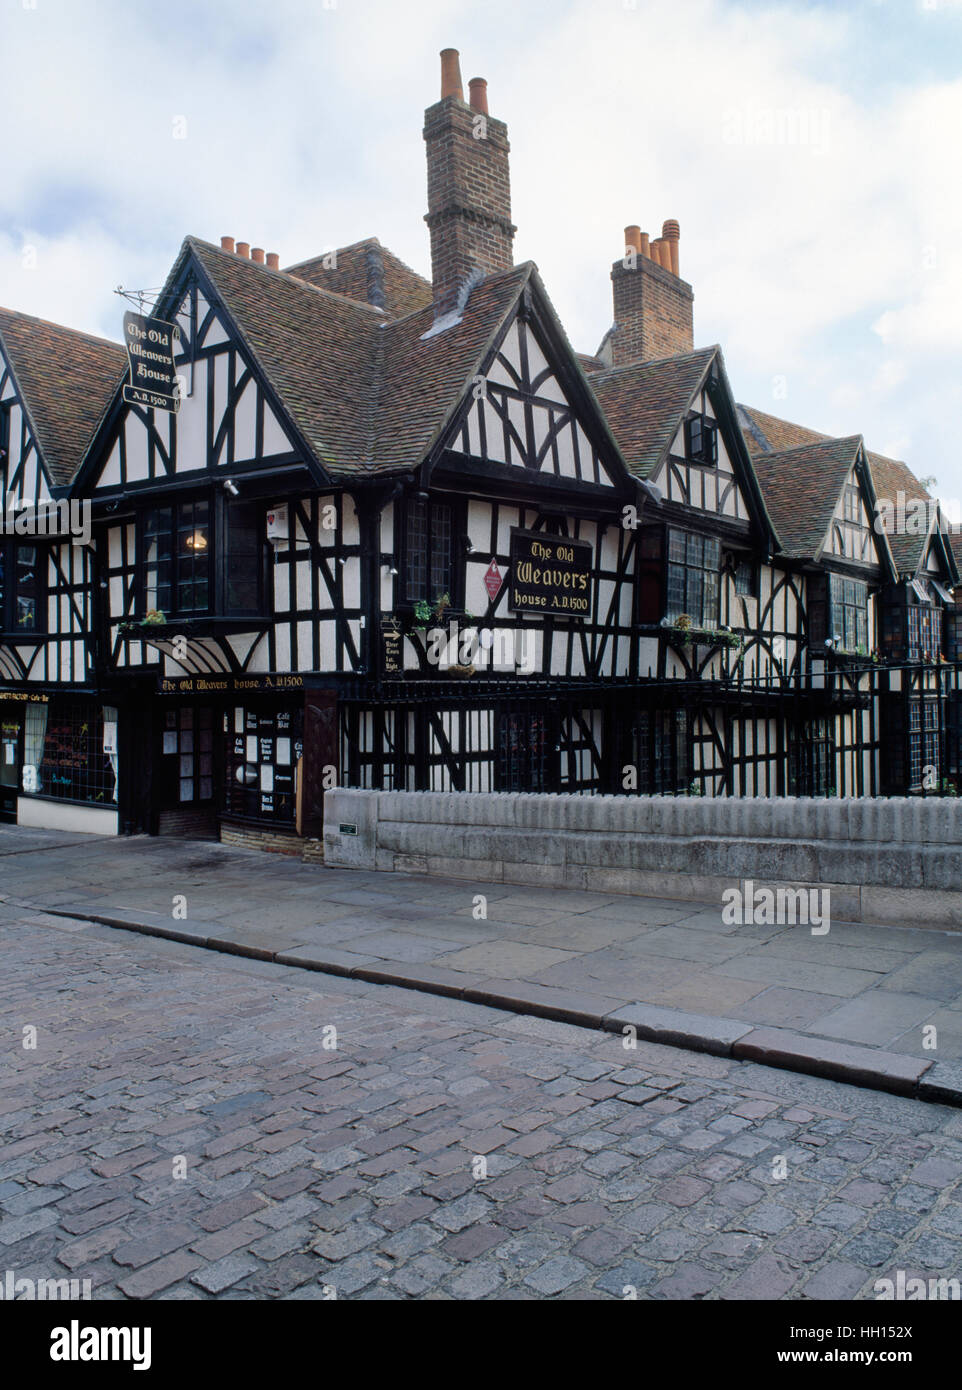 Durante el C16th-17th estos Tudor casas con entramados de madera junto a la Stour en Canterbury, Kent, fueron el hogar de flamenco & Huguenot tejedores. Foto de stock